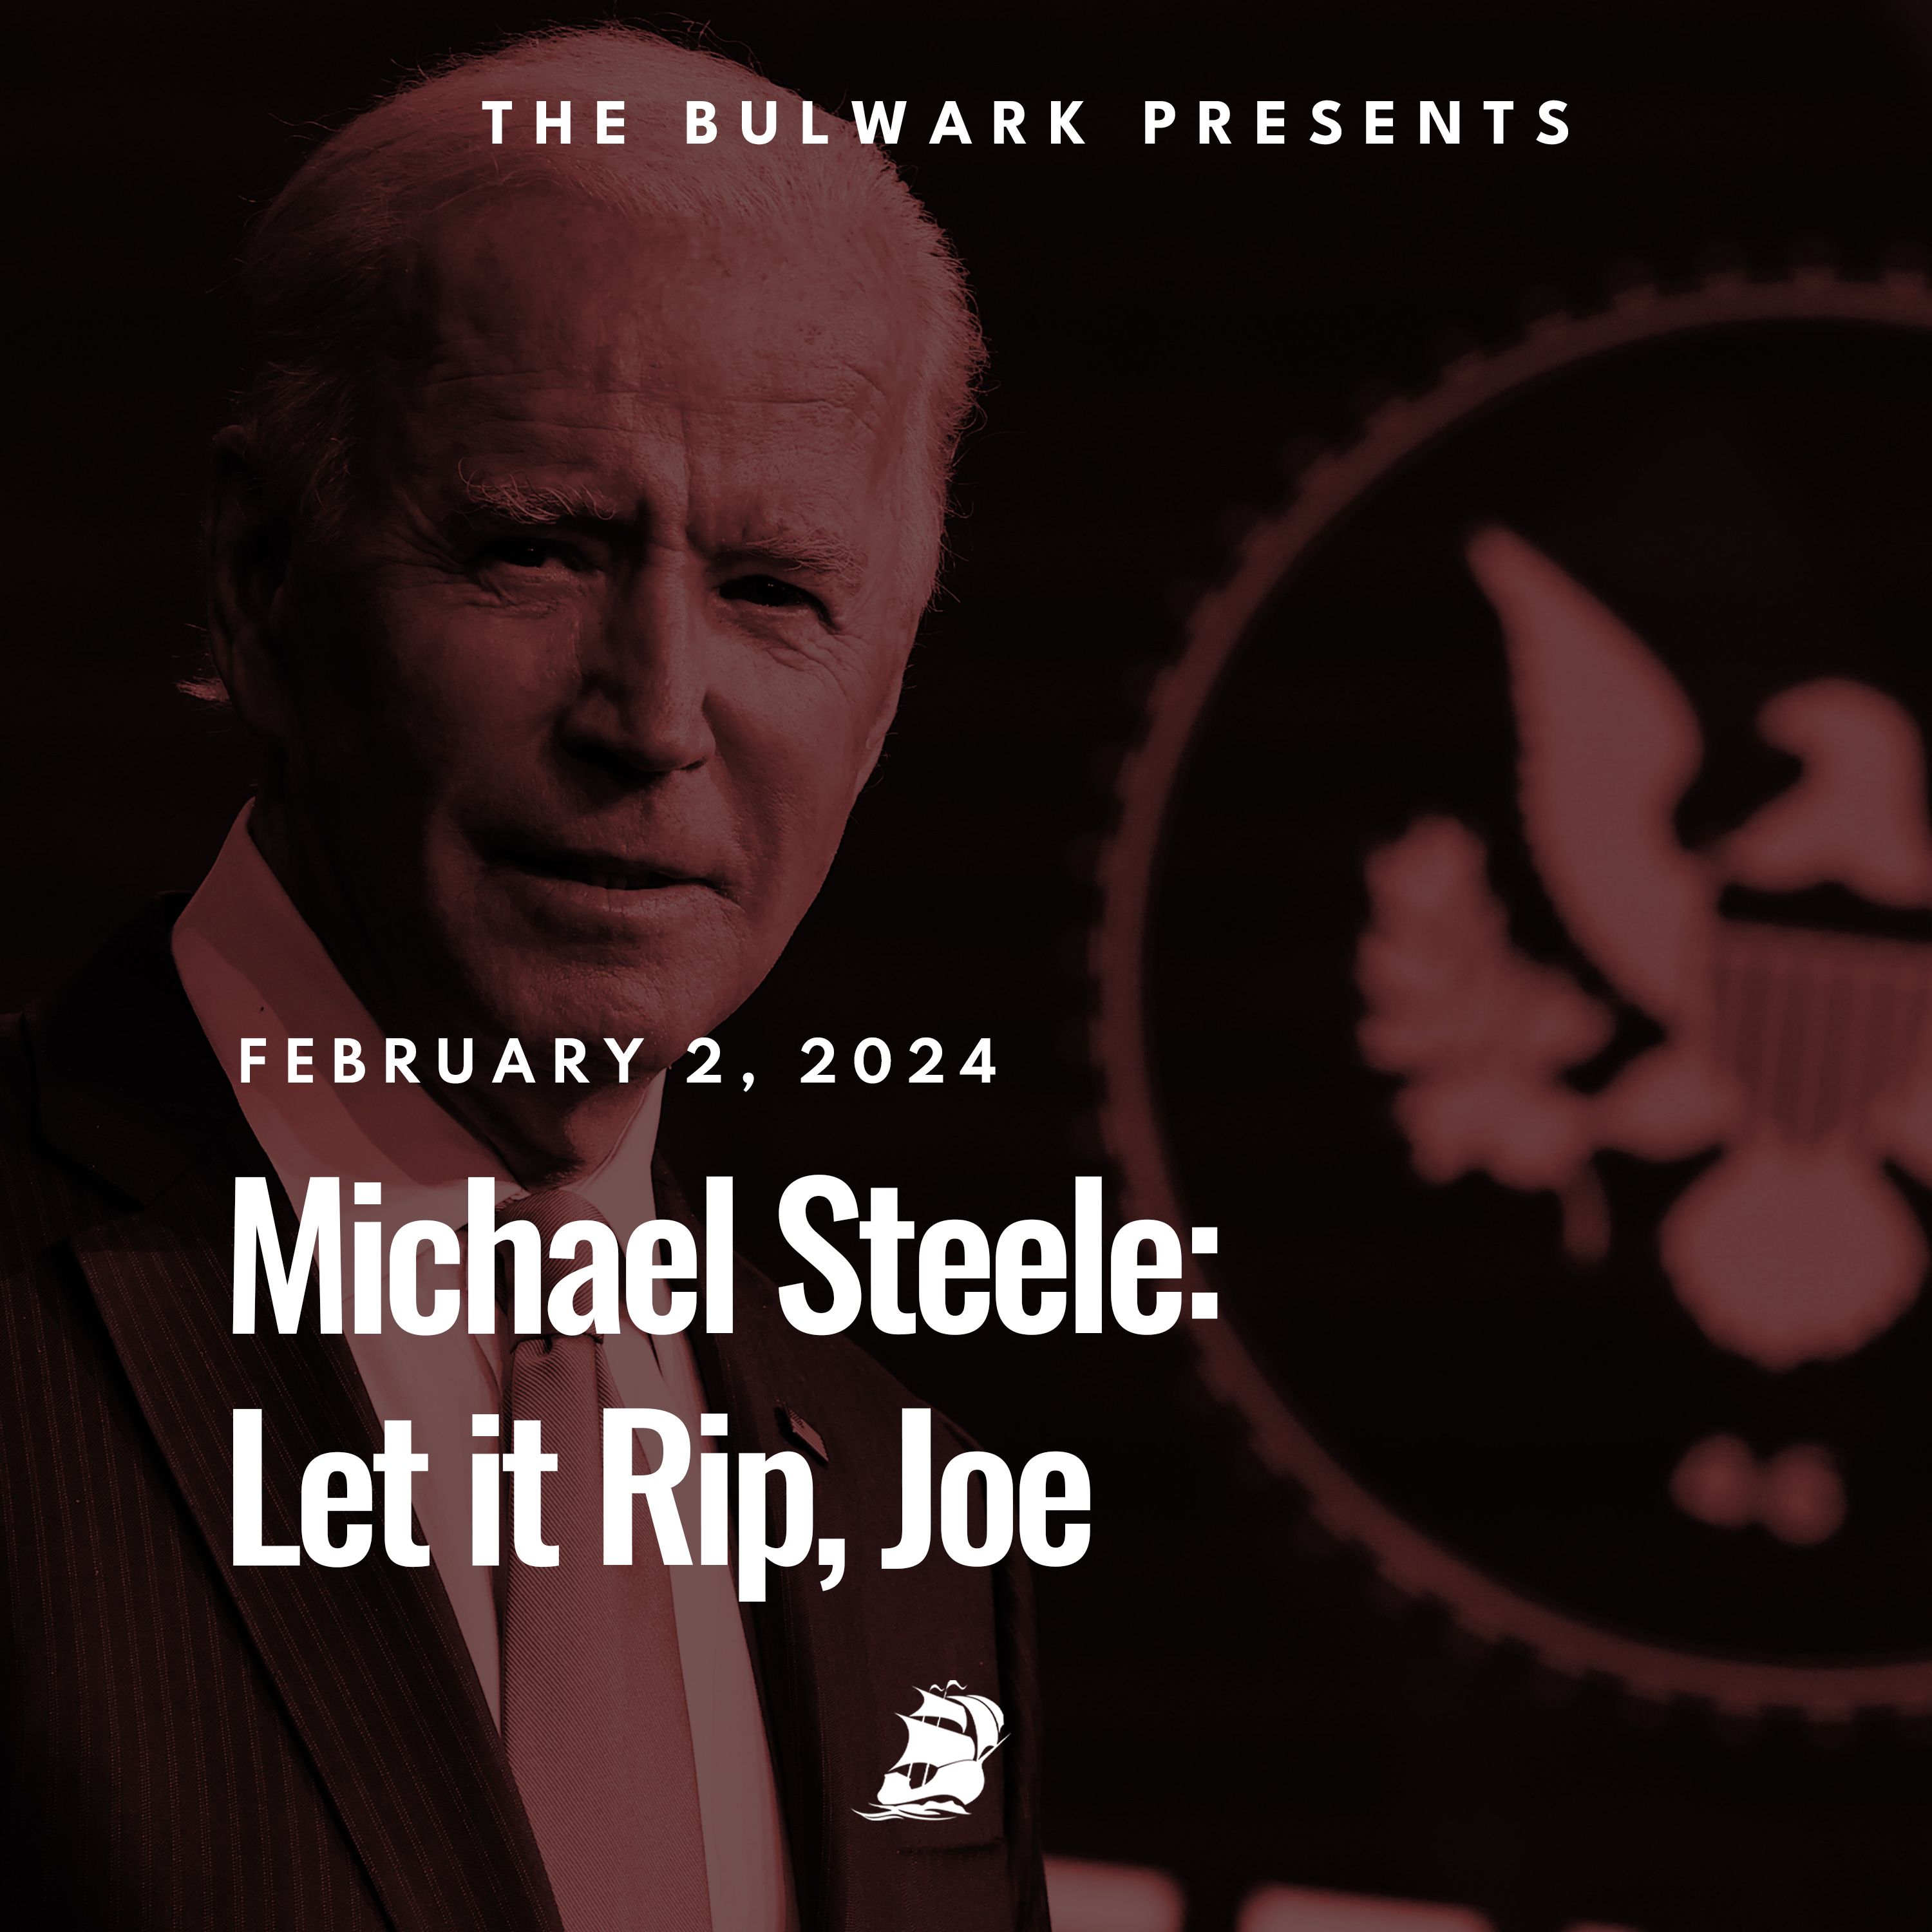 Michael Steele: Let it Rip, Joe